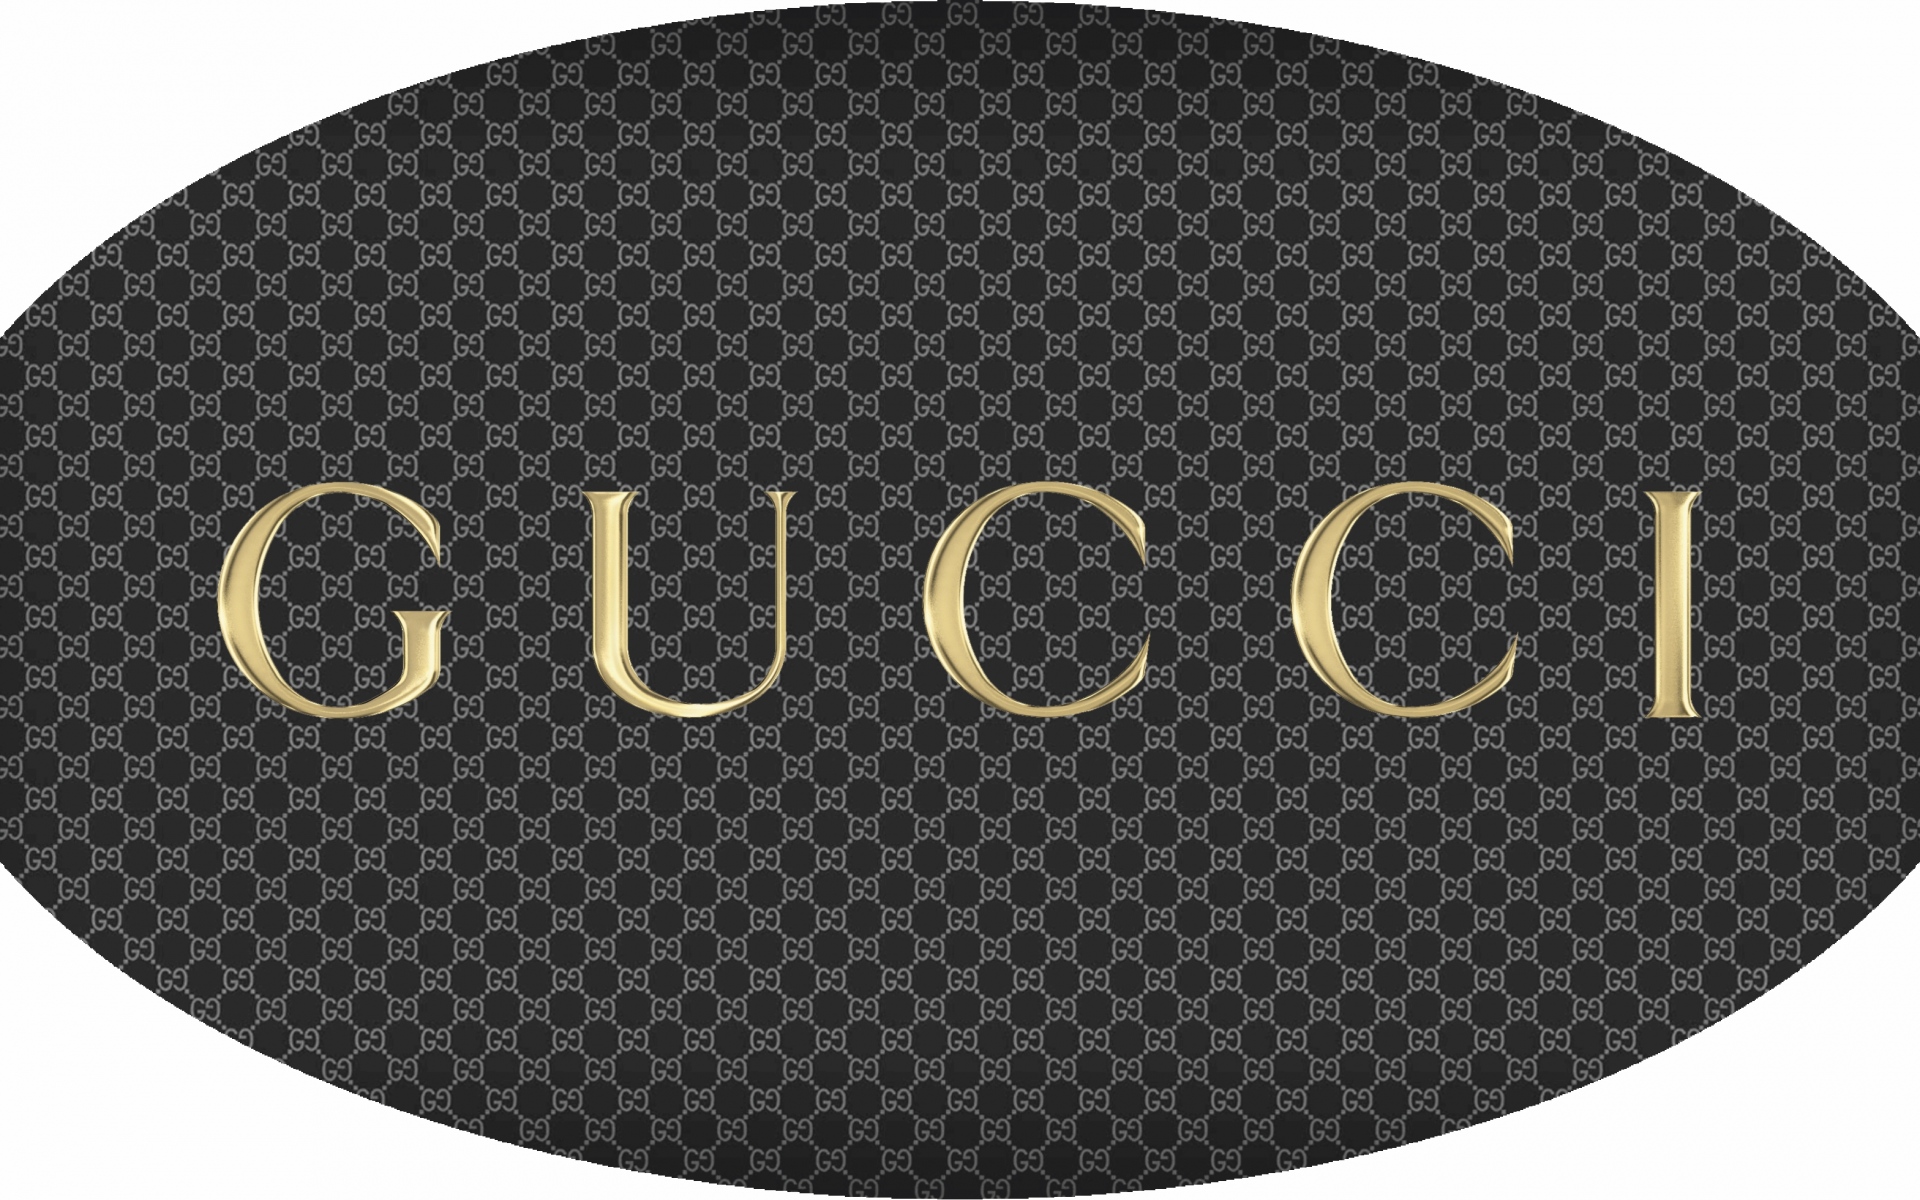 Картинки Gucci, бренд, логотип фото и обои на рабочий стол